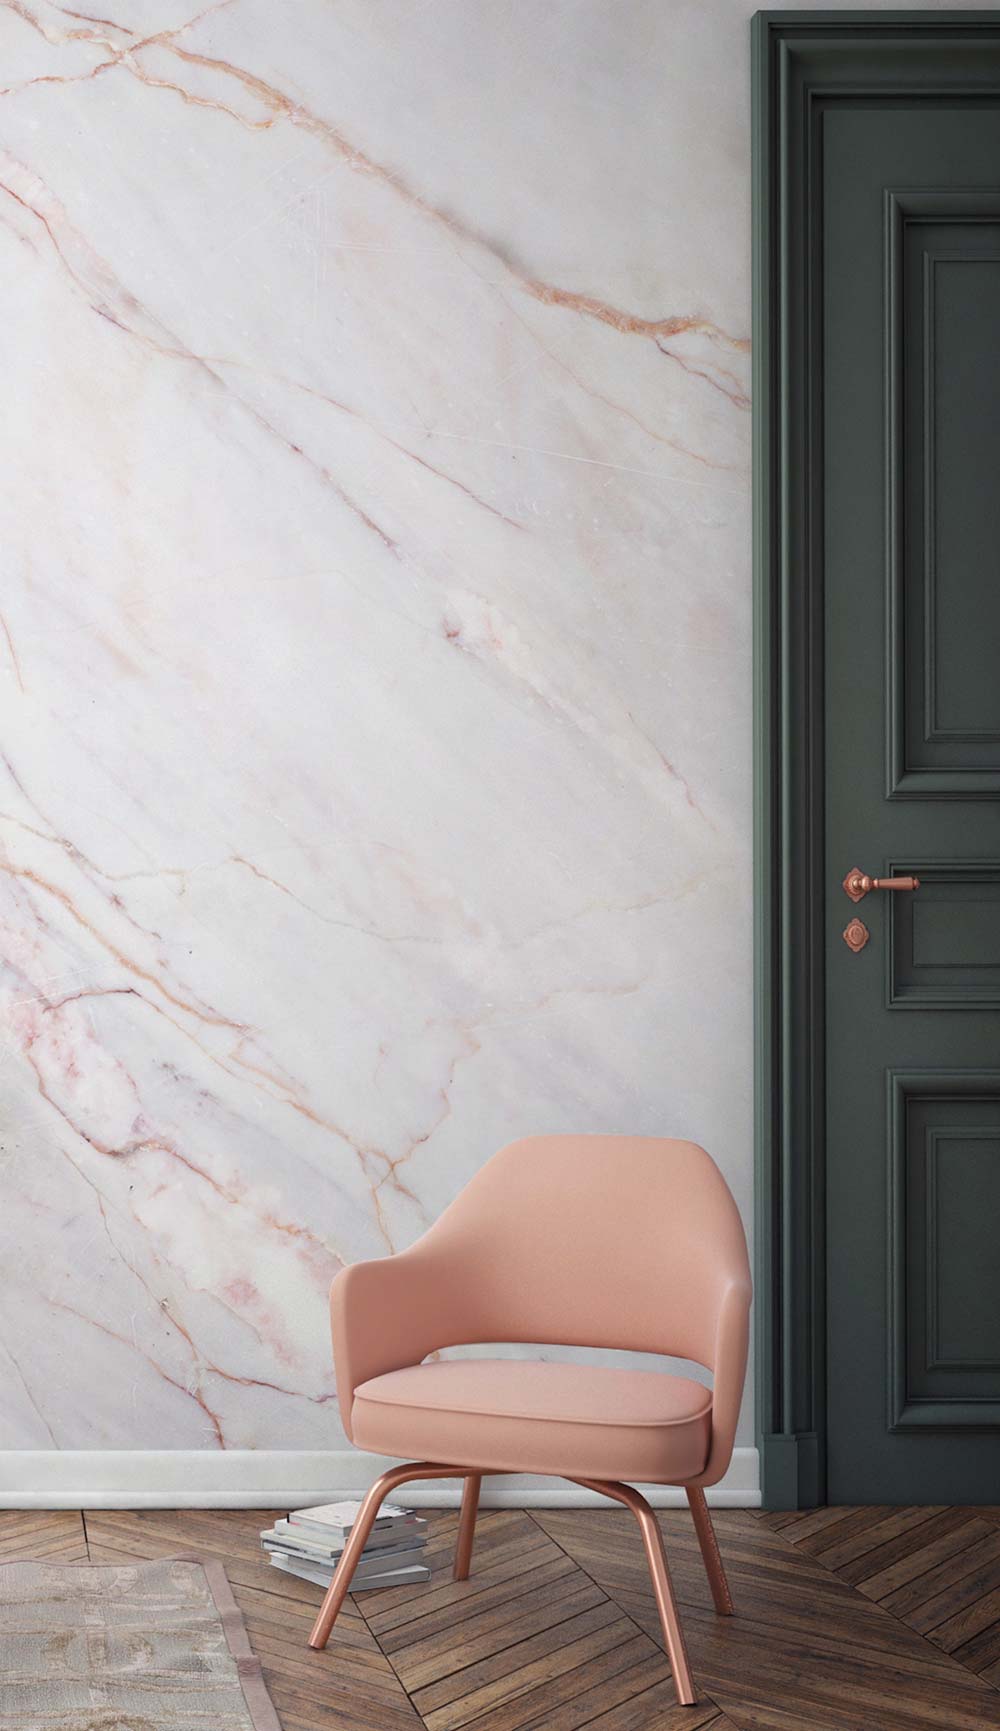 papier peint en marbre pour murs,rose,mur,chaise,chambre,meubles